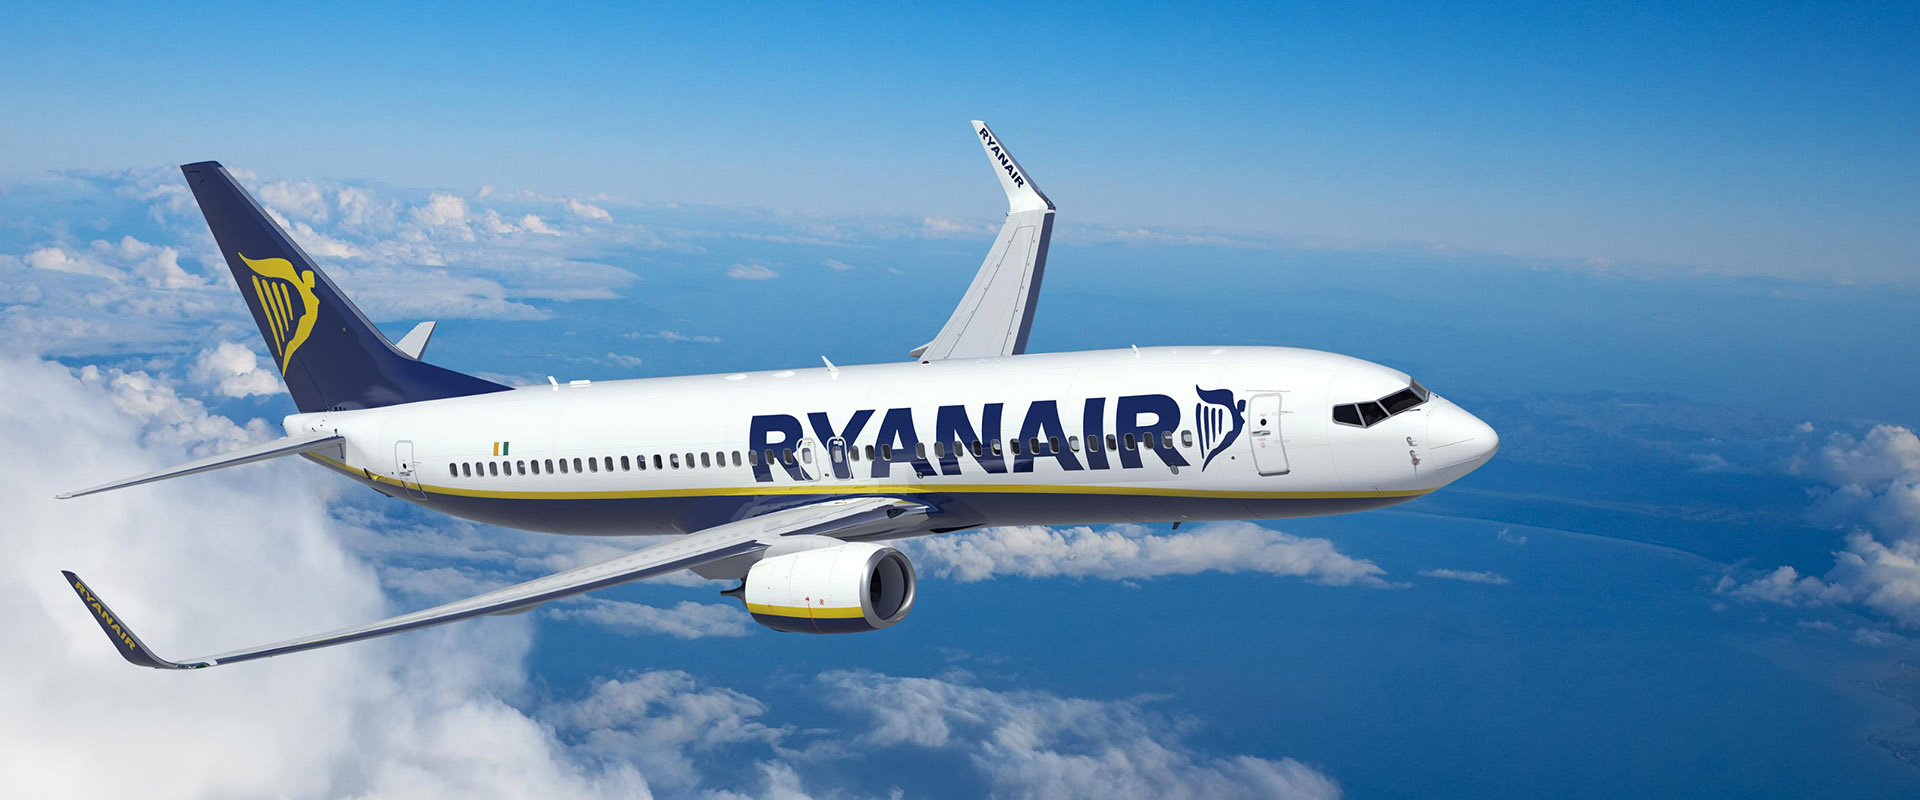 Η Ryanair Ανακοινωνει Νεο Δρομολογιο Απο Τη Θεσσαλονικη Προς Το Μαντσεστερ